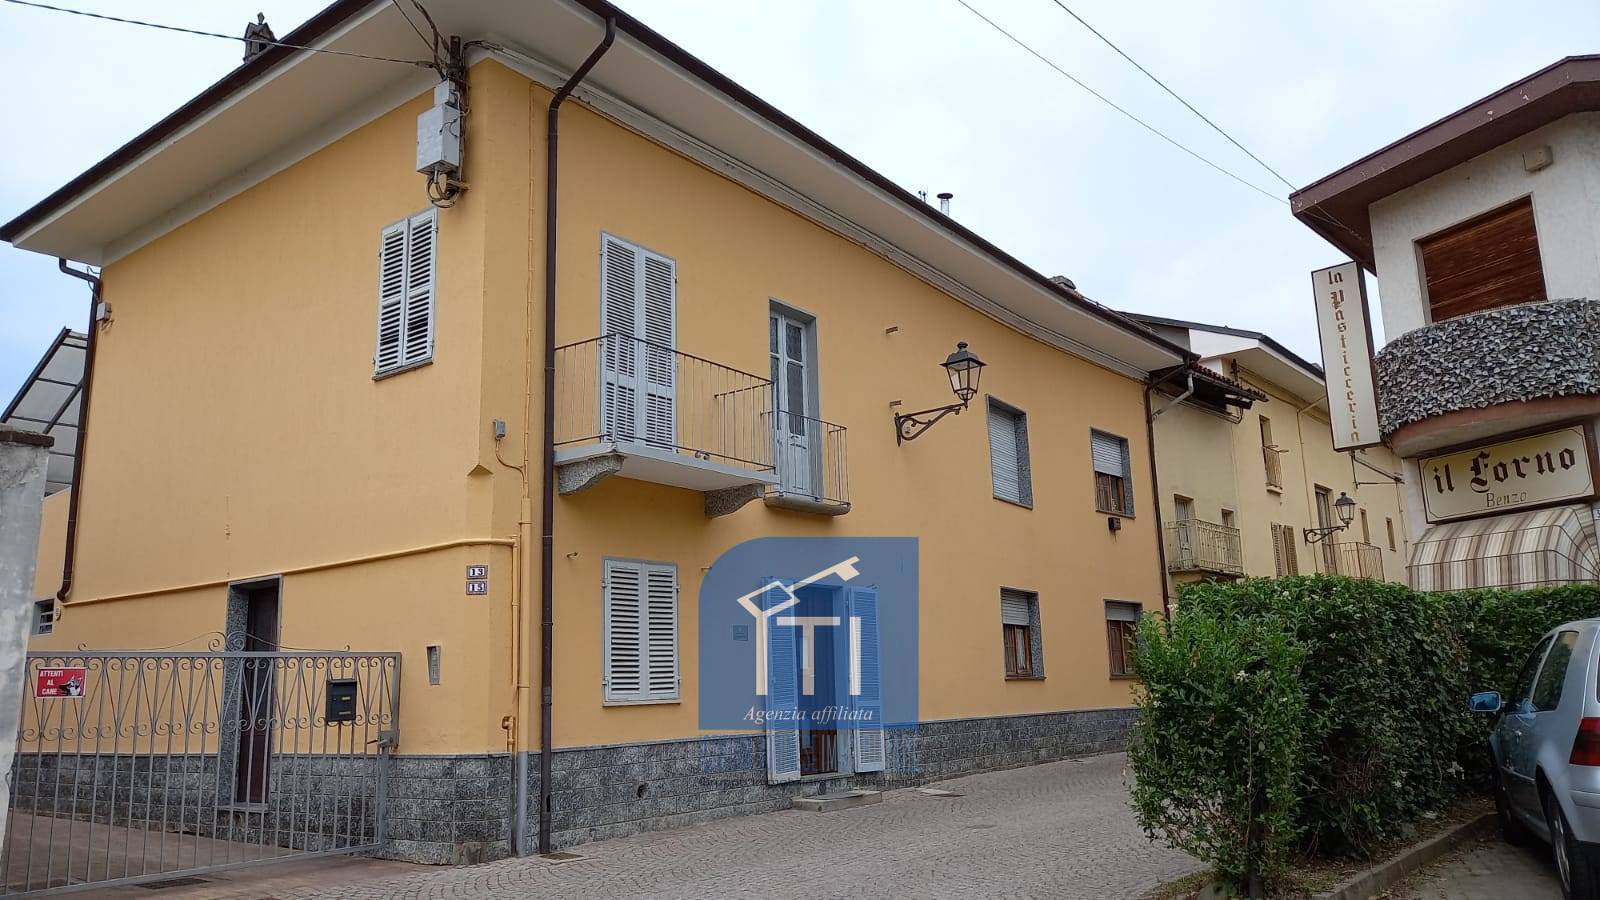 Appartamento in vendita a Grosso, 4 locali, prezzo € 23.000 | PortaleAgenzieImmobiliari.it